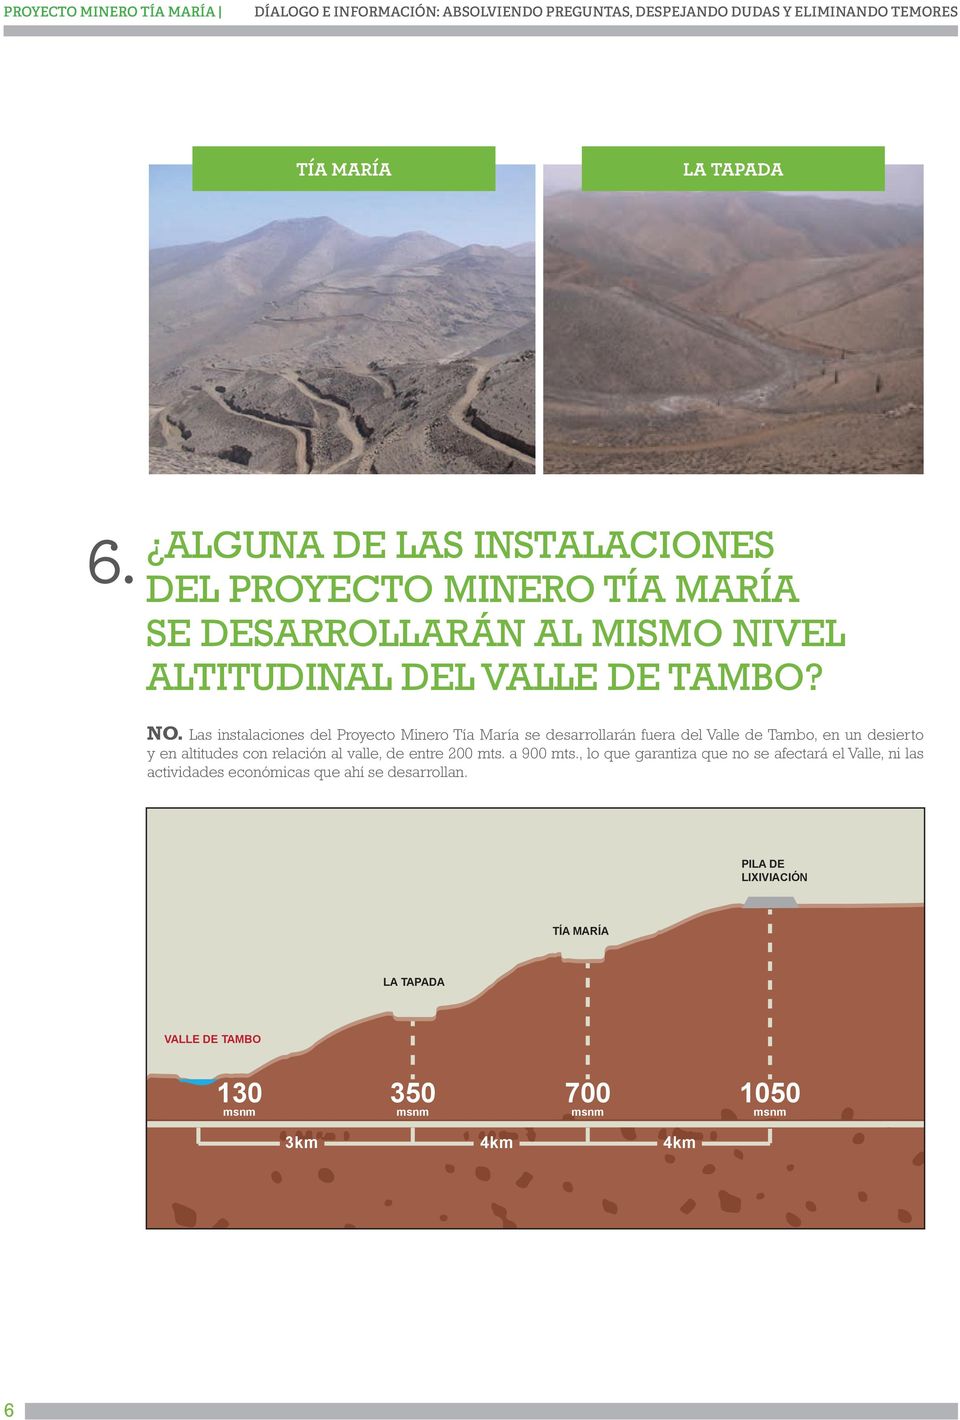 Las instalaciones del Proyecto Minero Tía María se desarrollarán fuera del Valle de Tambo, en un desierto y en altitudes con